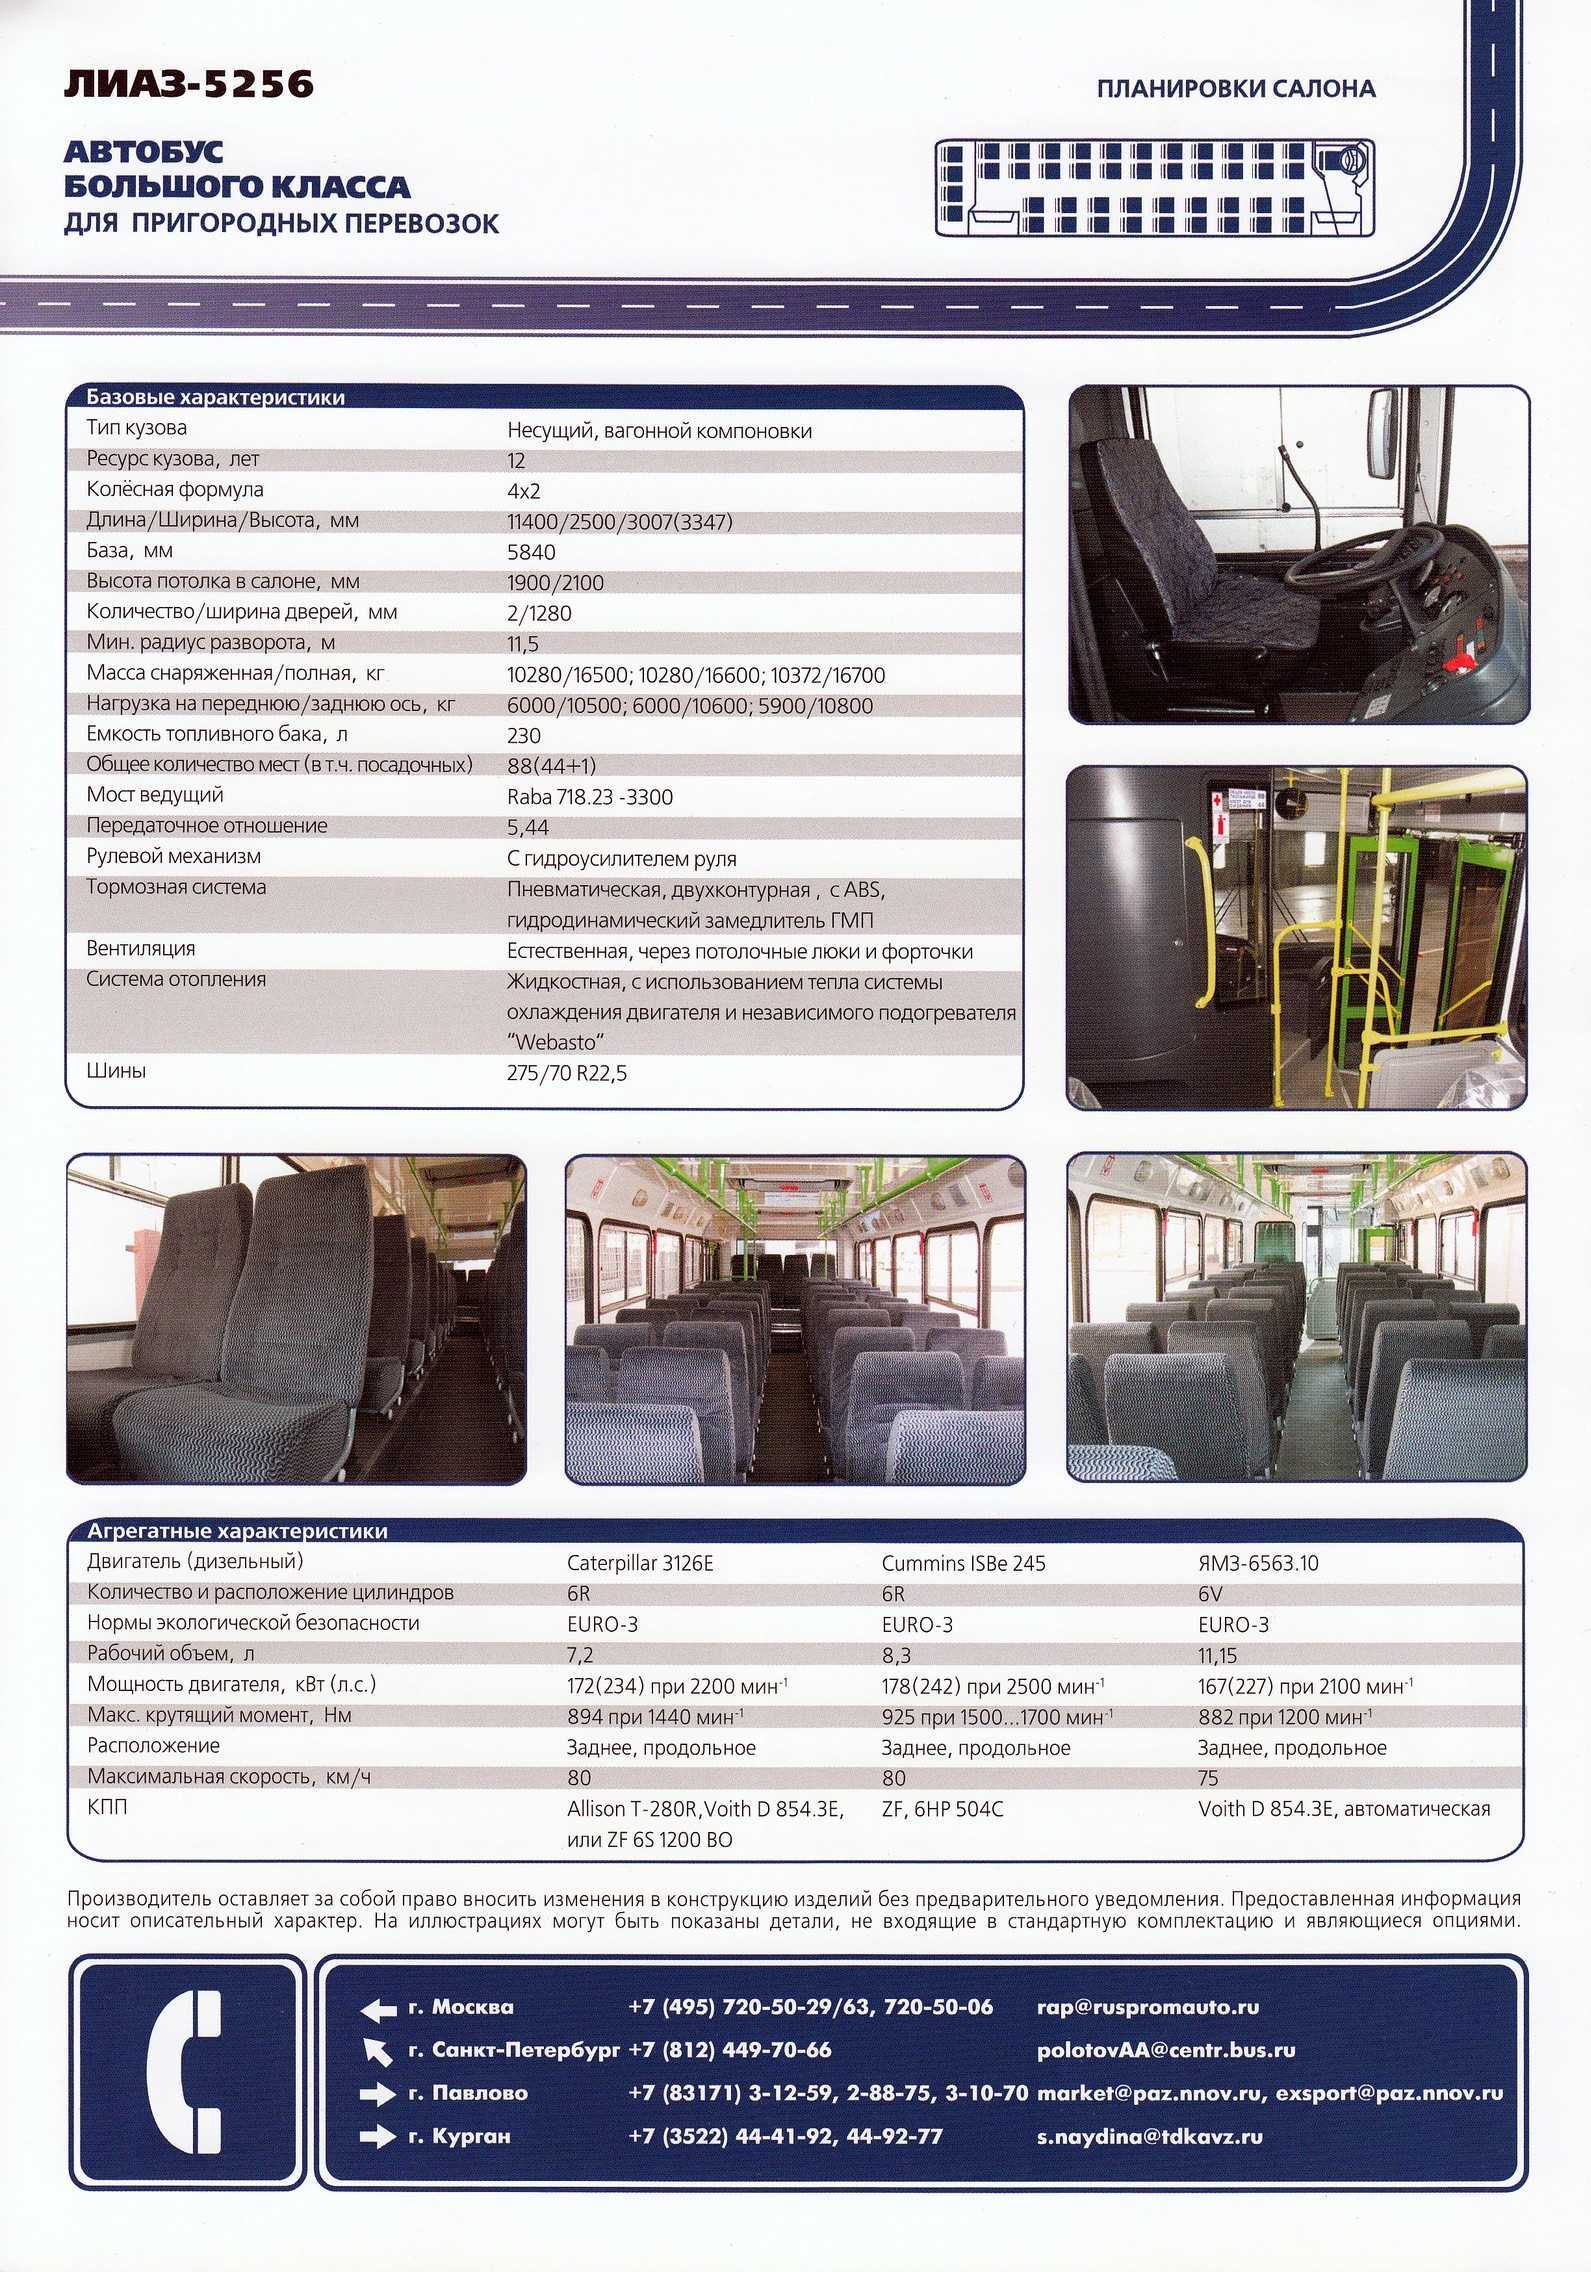 Лиаз 6213: автобус, технические характеристики